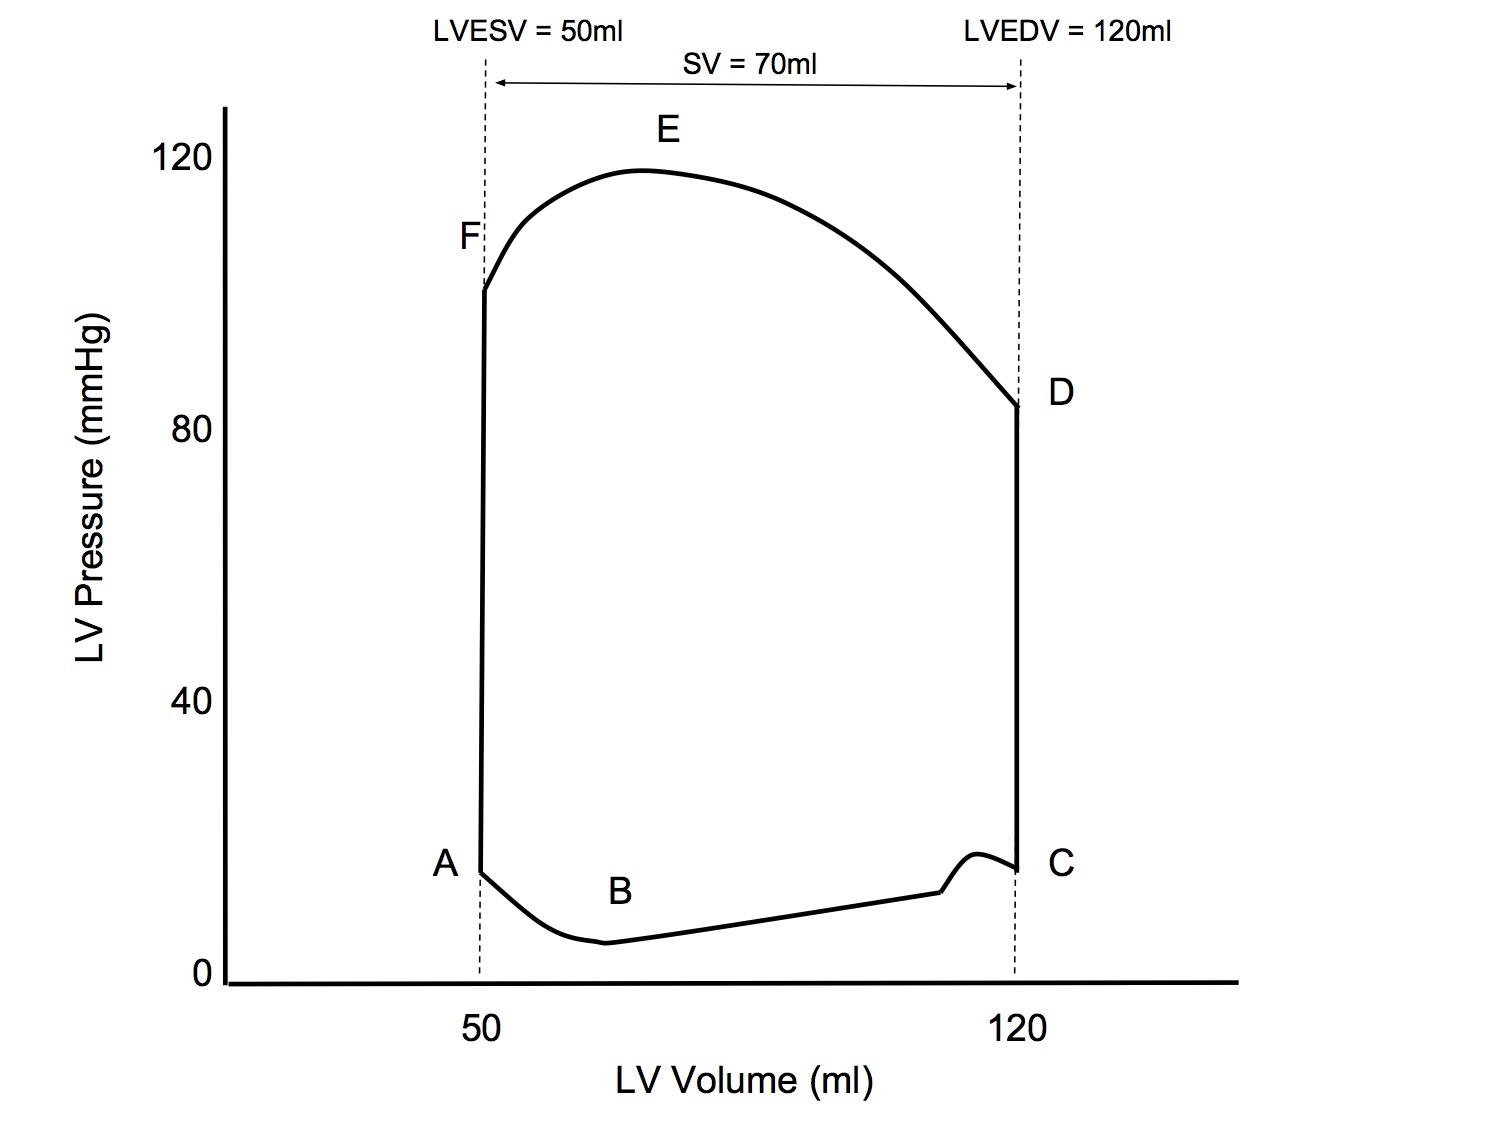 LV Pressure Volume Loop.jpg